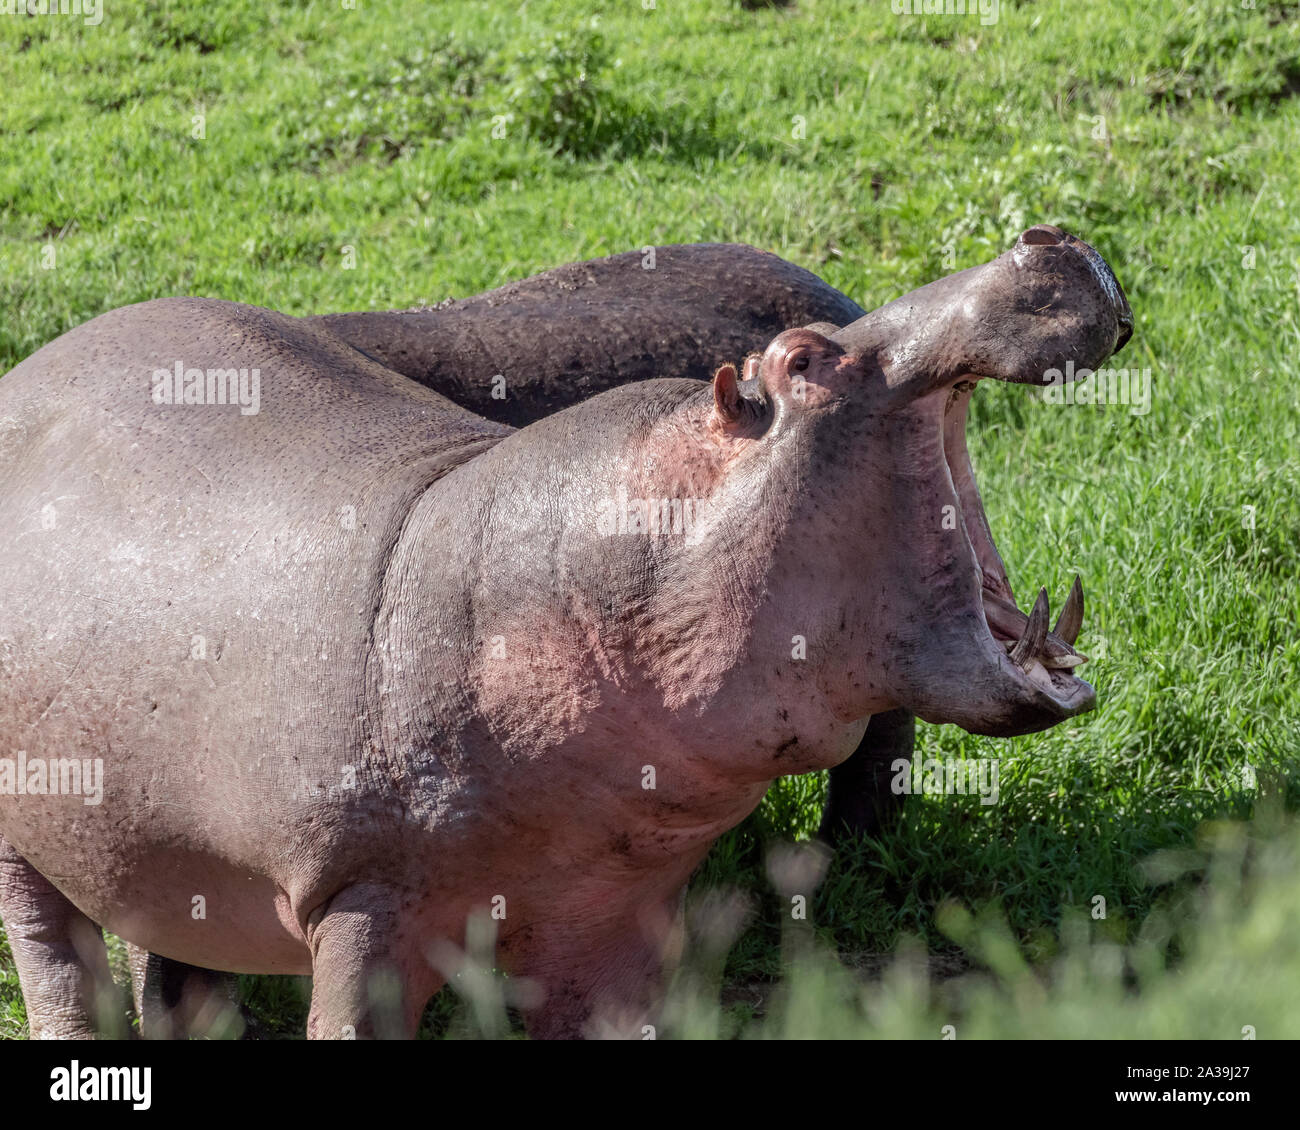 Hippo (Hippopotamus amphibius) in fresh grass in daylight, Ngorongoro Crater, Tanzania Stock Photo